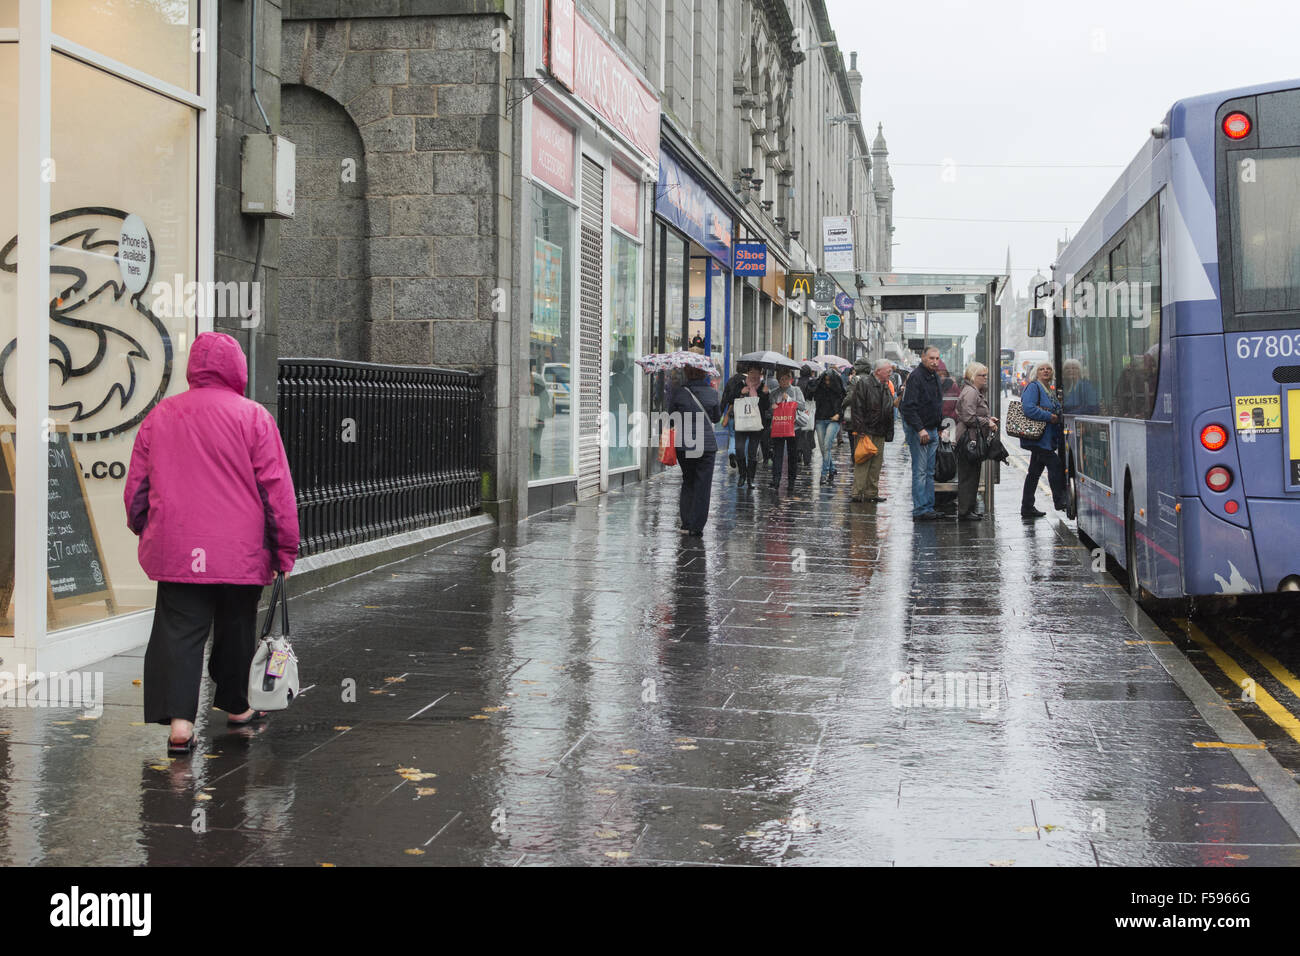 Aberdeen, Scotland, UK - 29 October 2015: Union Street on a rainy autumn day Stock Photo